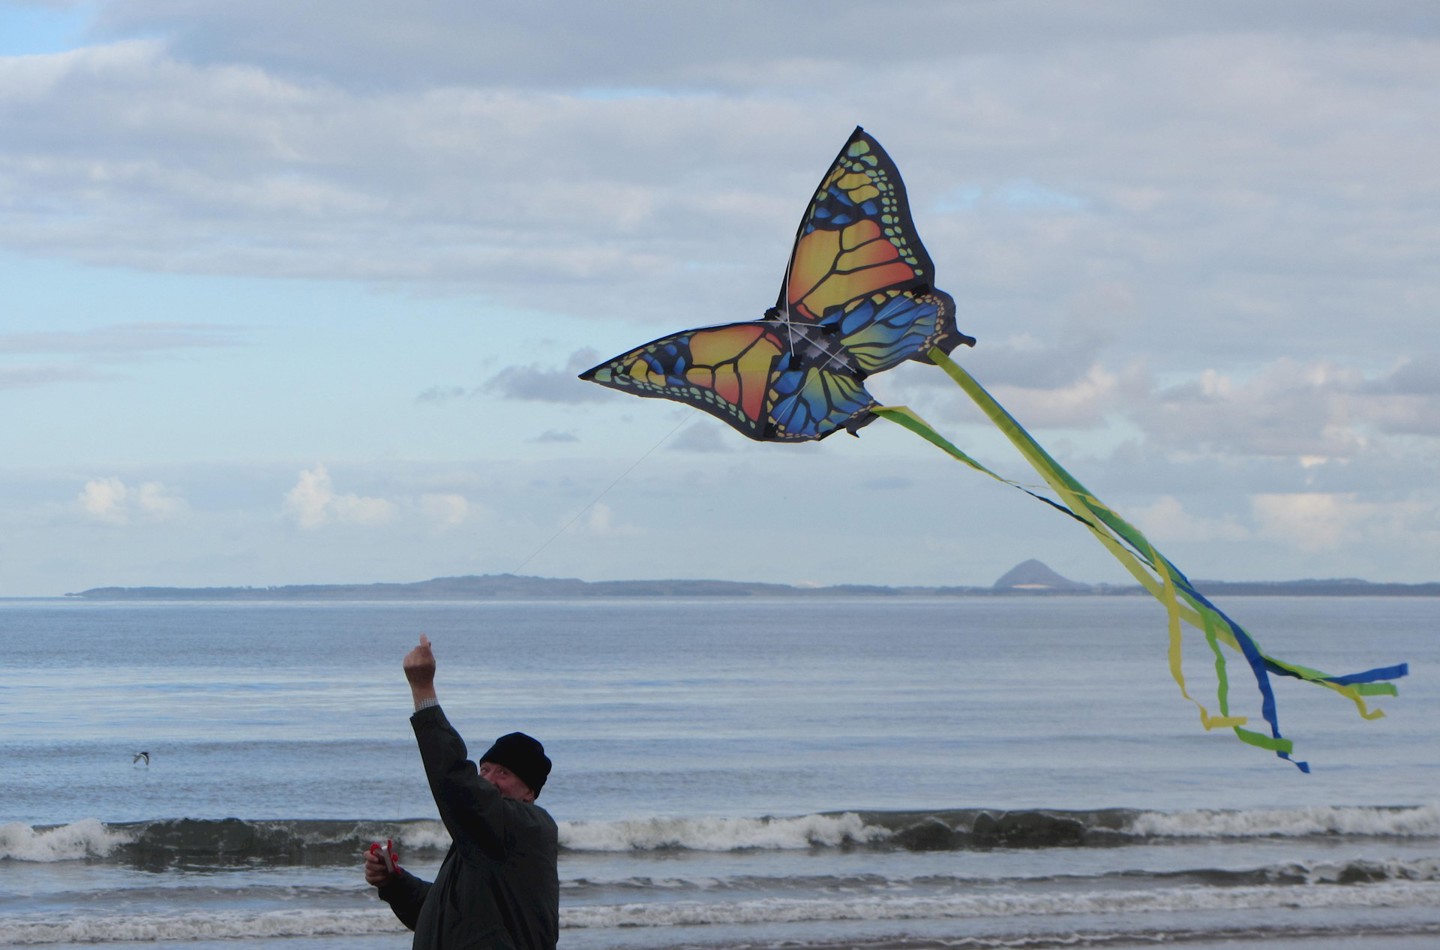 Man with kite on Portobello beach